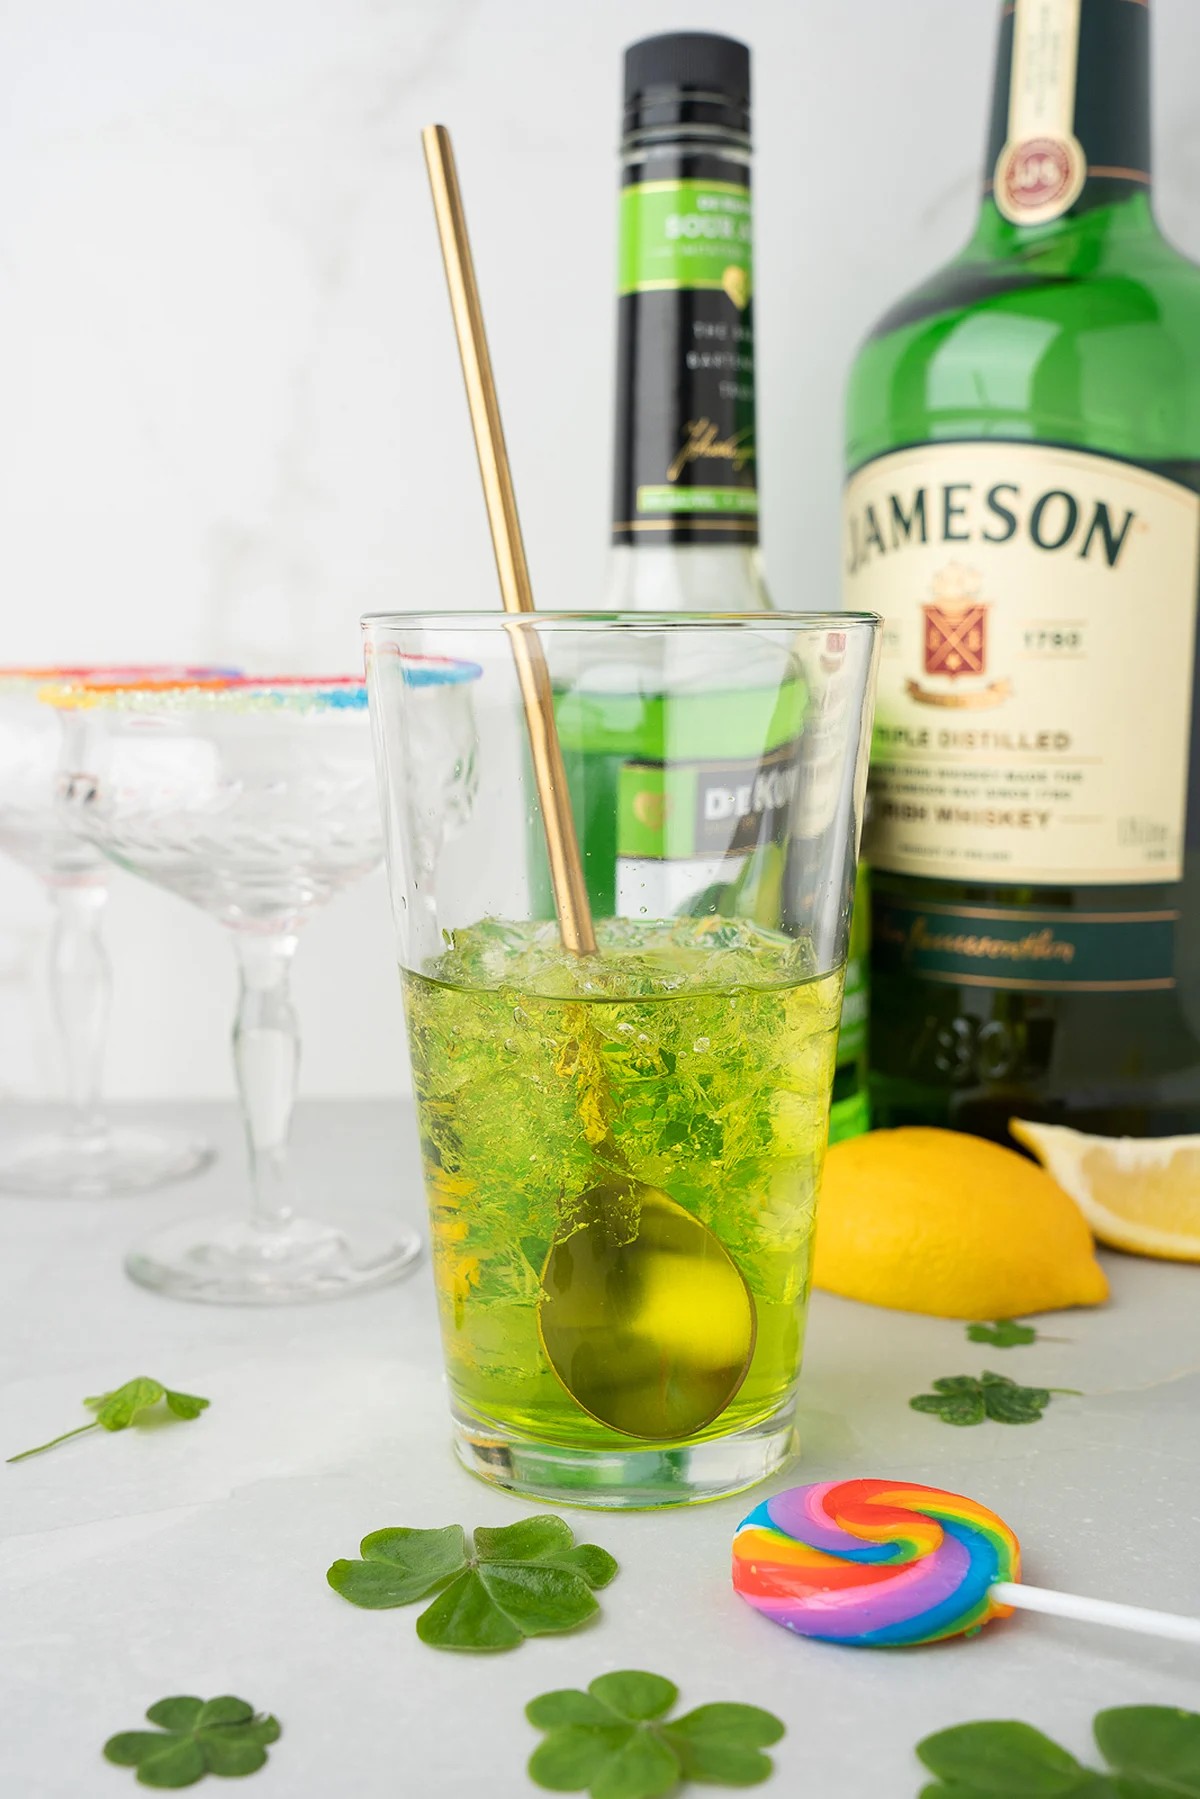 How to Make This Irish Whiskey Rainbow Cocktail